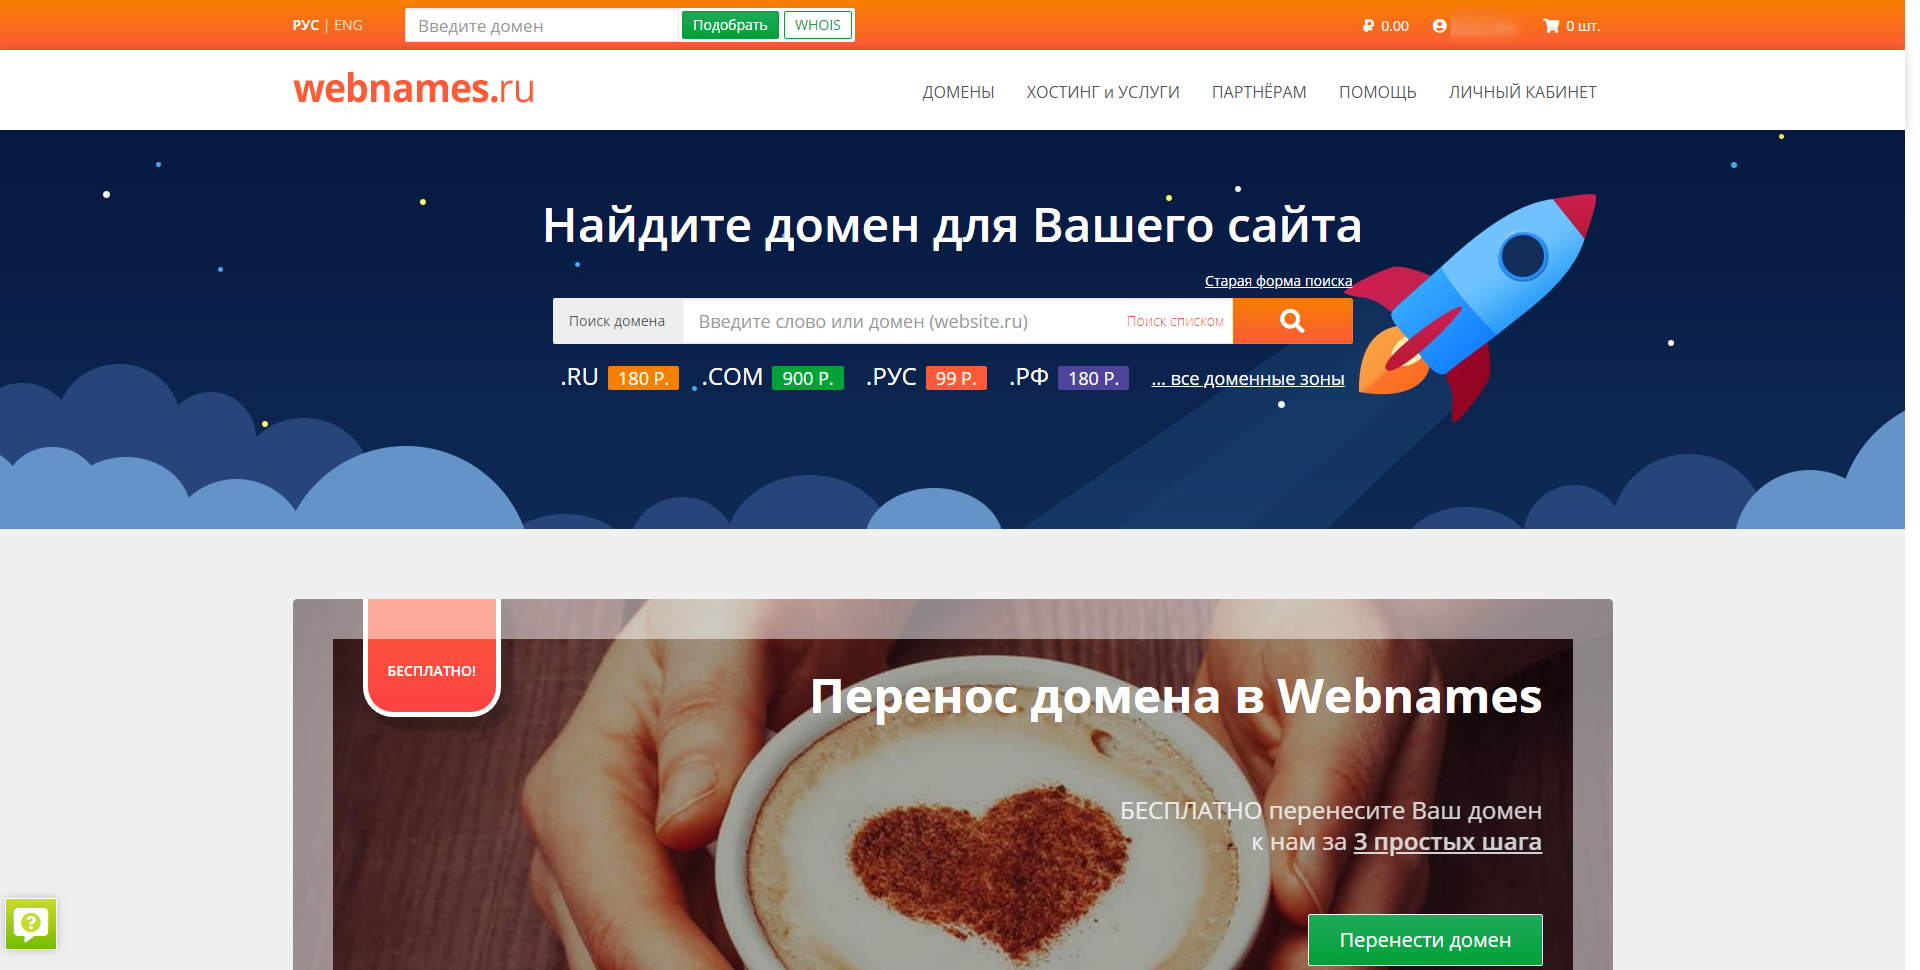 Главная страница хостинга Webnames.ru